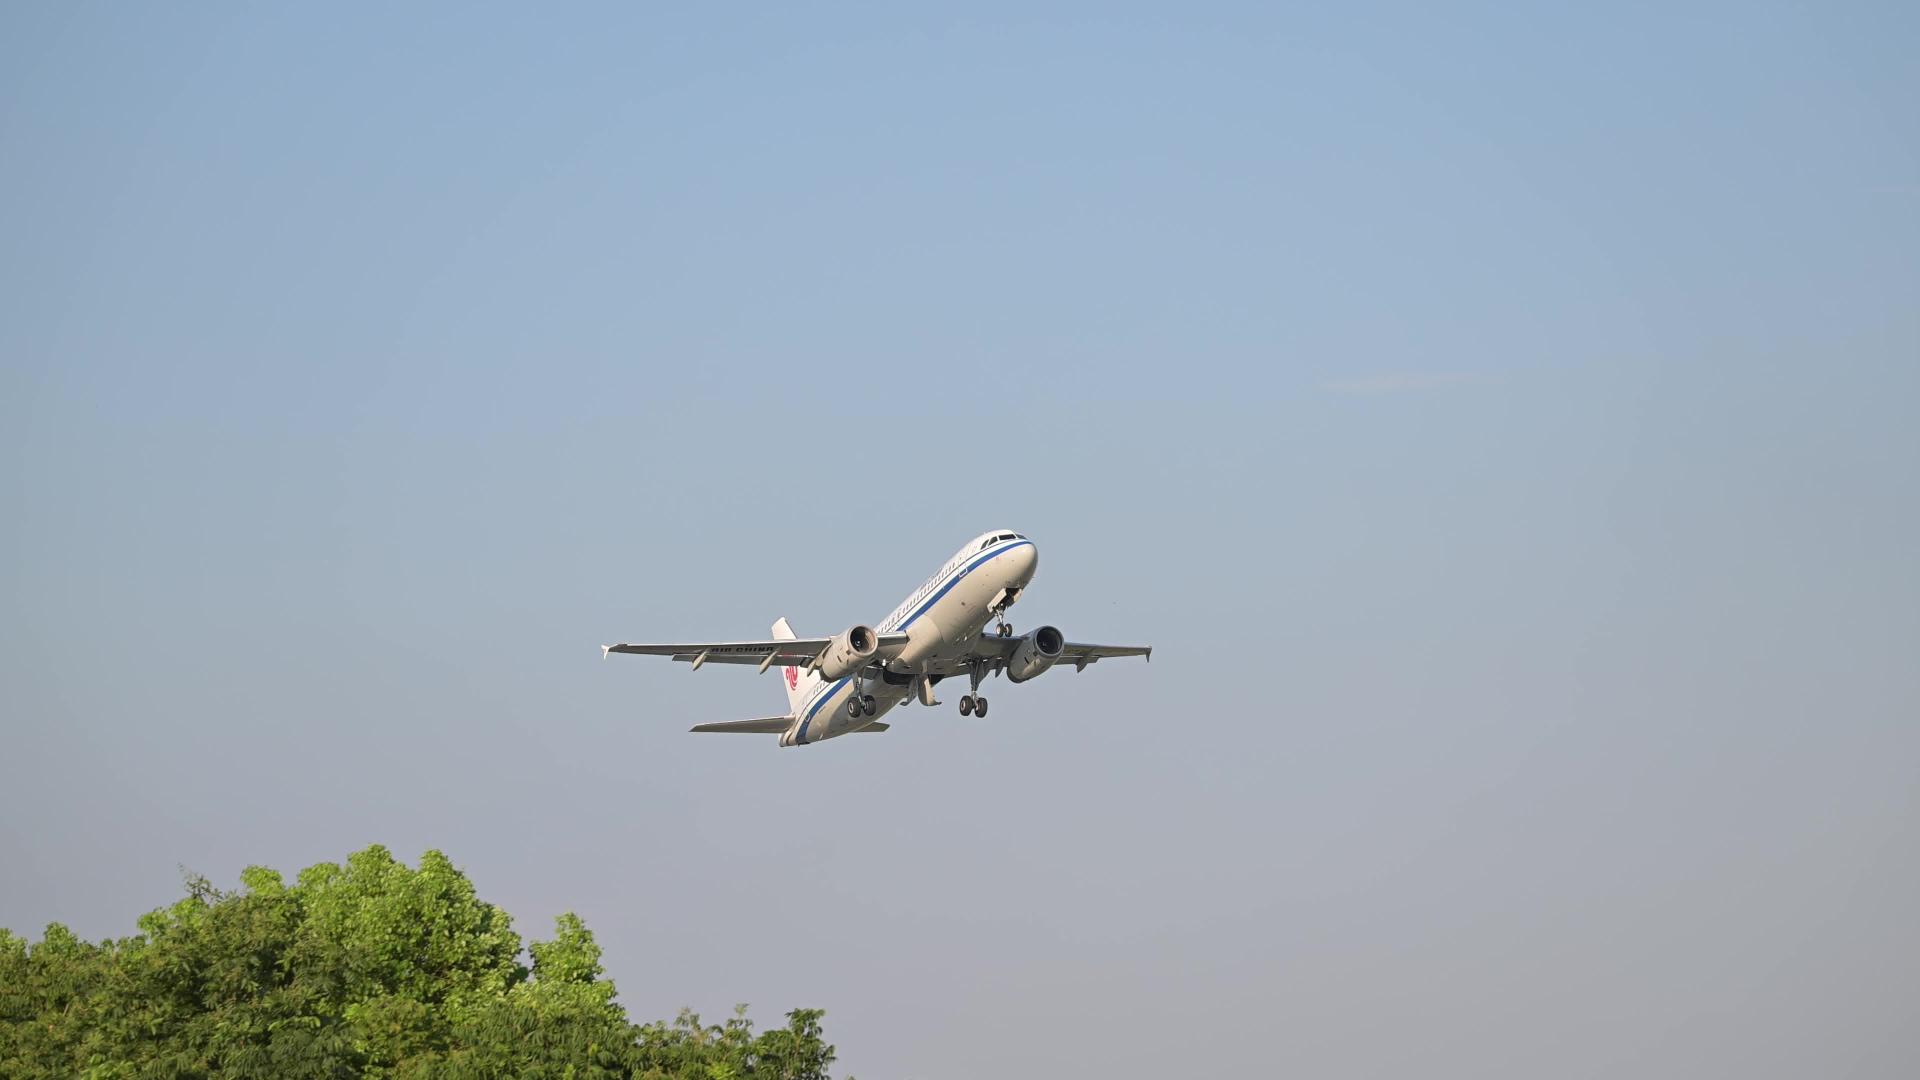 萧山机场-幸福翼公园-飞机起飞